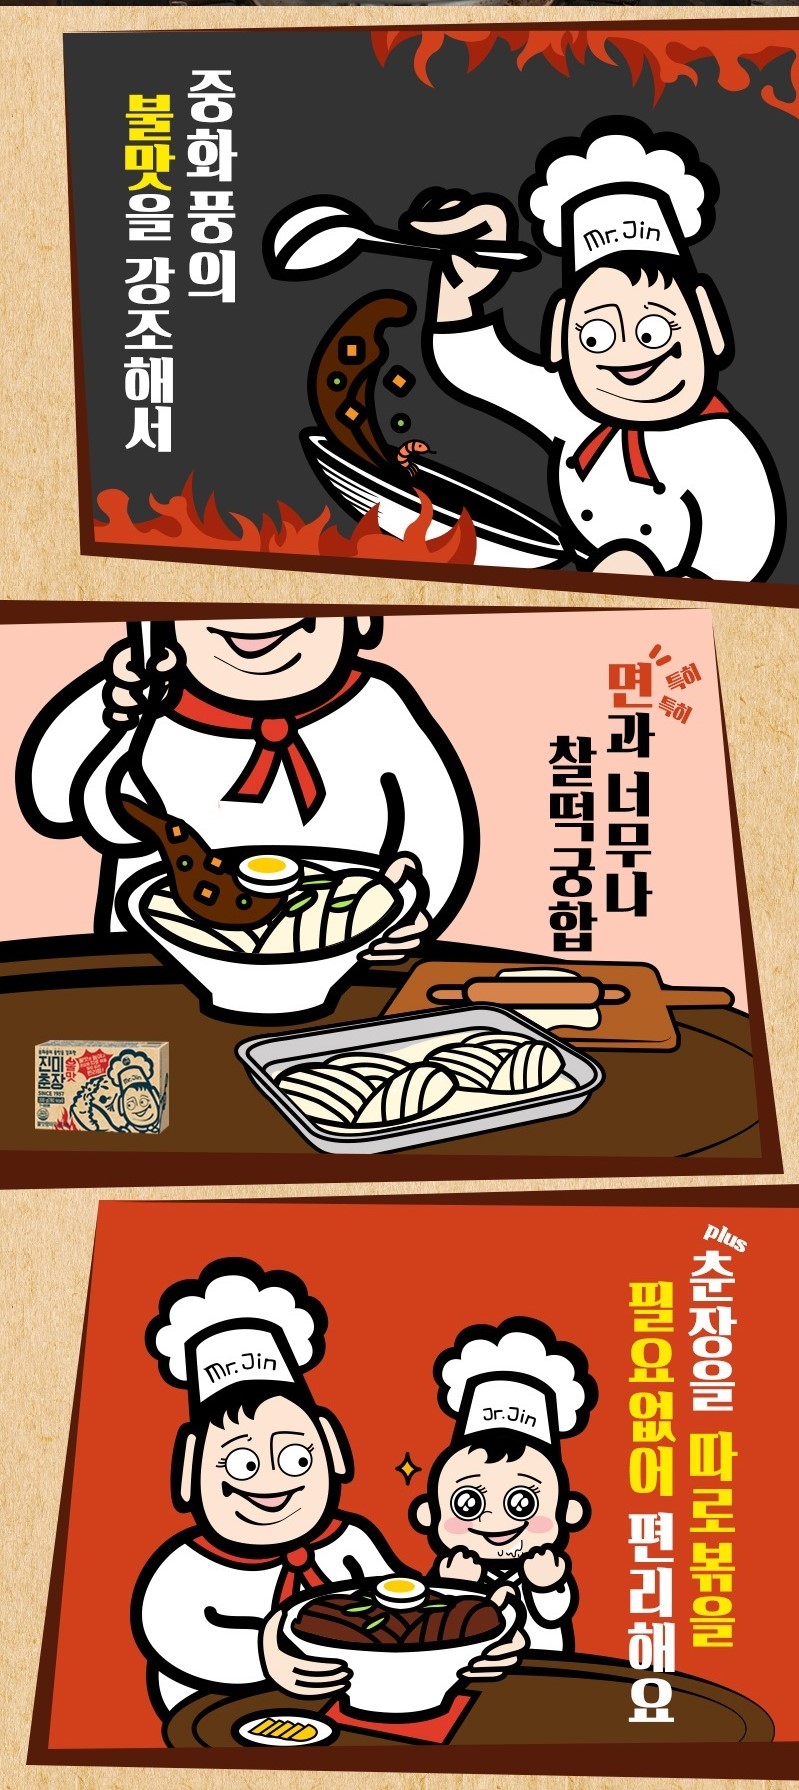 韓國食品-[Jinmi] Spicy Black Bean Paste 300g